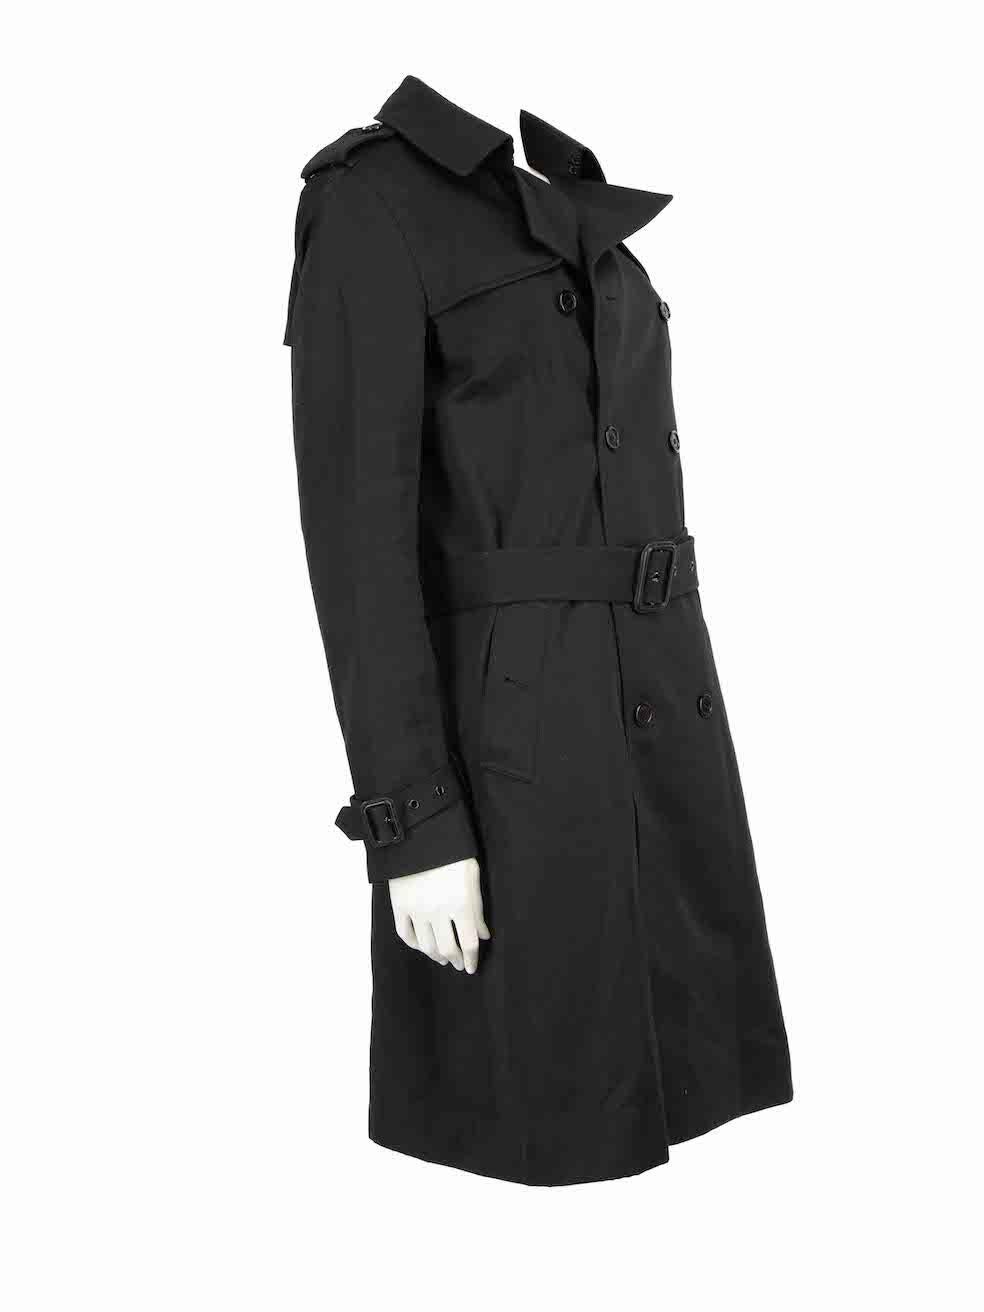 CONDIT ist sehr gut. Kaum sichtbare Abnutzungserscheinungen am Mantel sind bei diesem gebrauchten Saint Laurent Designer-Wiederverkaufsartikel zu erkennen.
 
 
 
 Einzelheiten
 
 
 Schwarz
 
 Polyester
 
 Trenchcoat
 
 Zweireiher
 
 Gürtel
 
